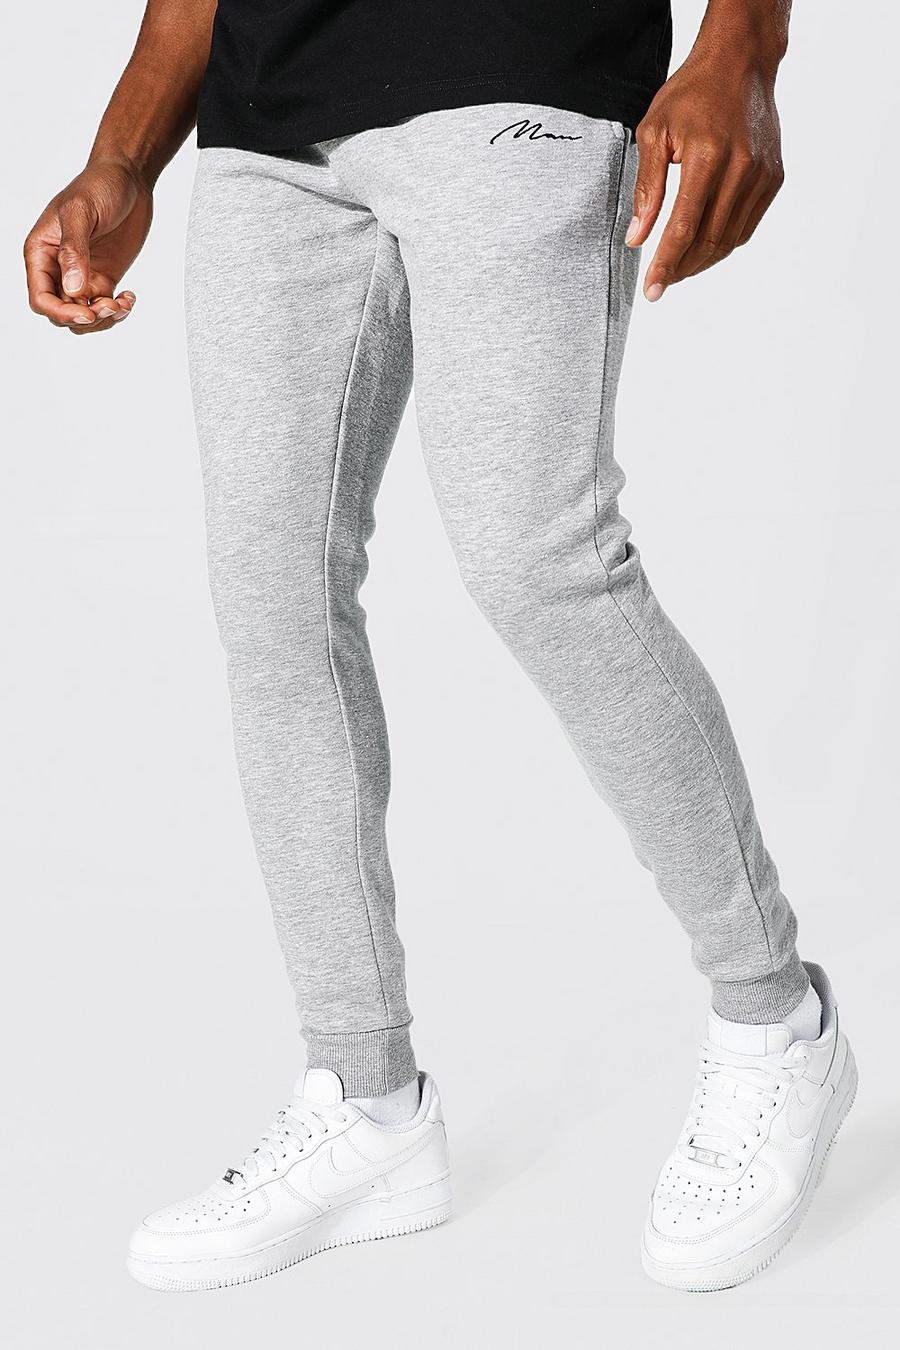 Pantalones deportivos súper pitillo reciclados con firma MAN, Grey grigio image number 1